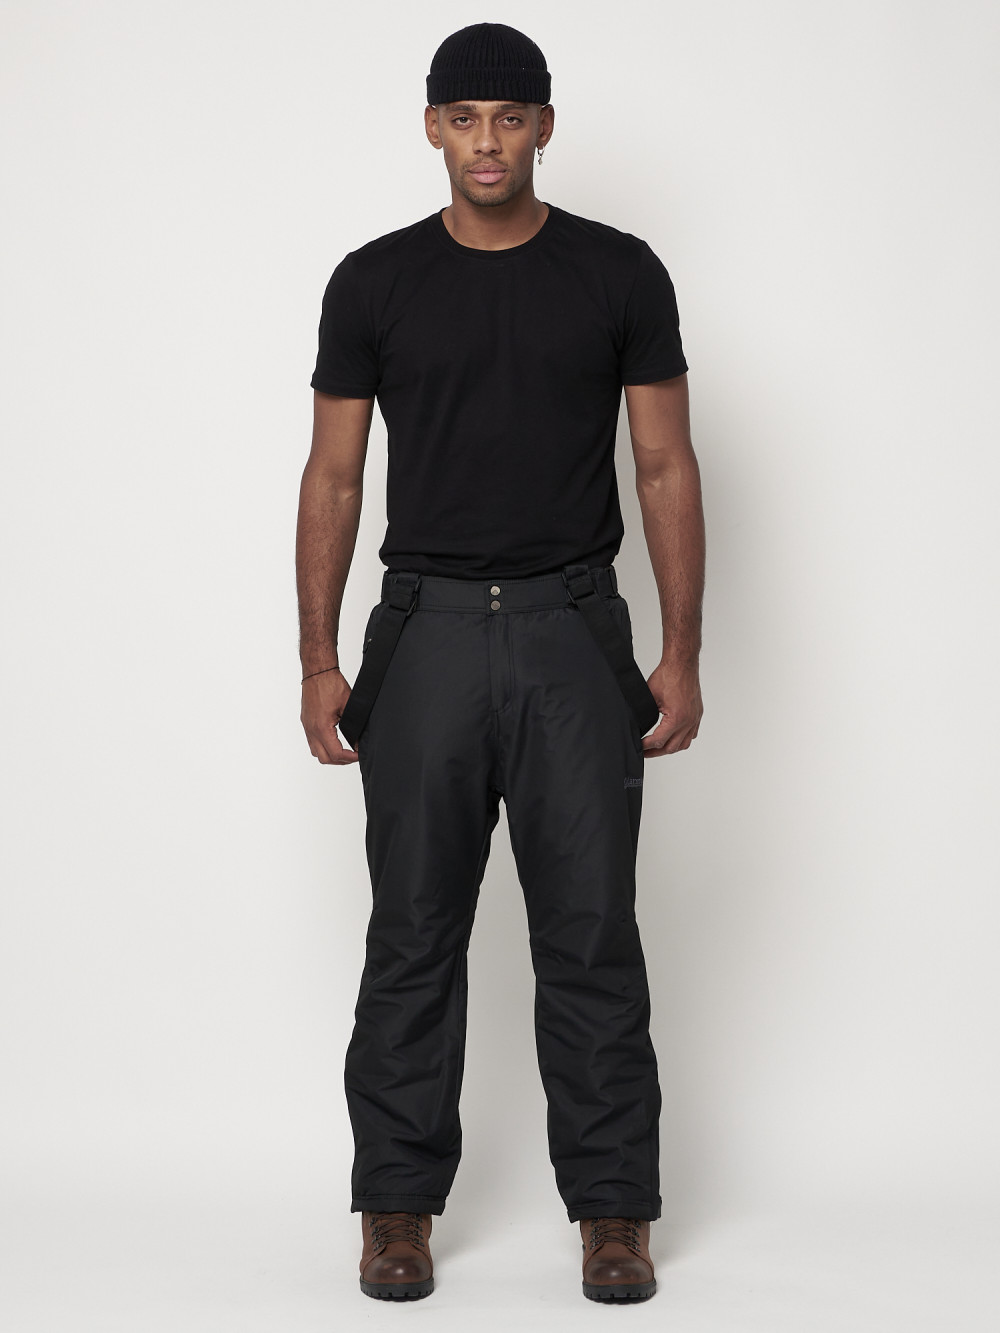 Полукомбинезон брюки горнолыжные MTFORCE мужские черного цвета 66414Ch, 56